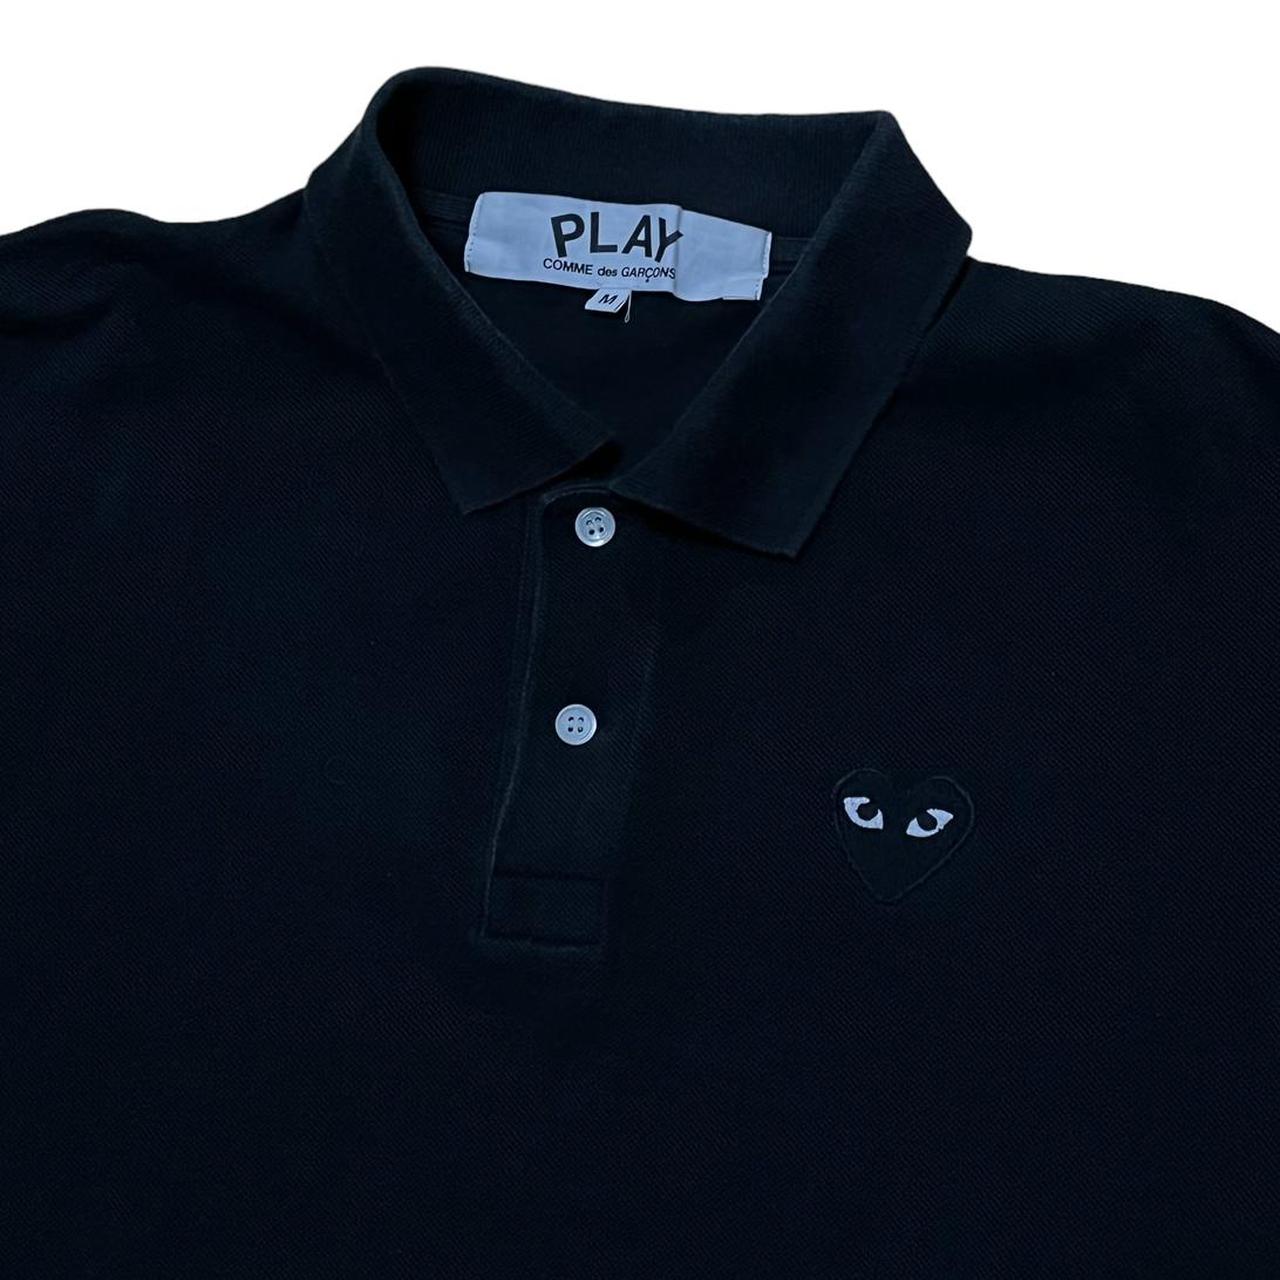 Comme des Garçons Play Men's Black and Blue T-shirt (2)